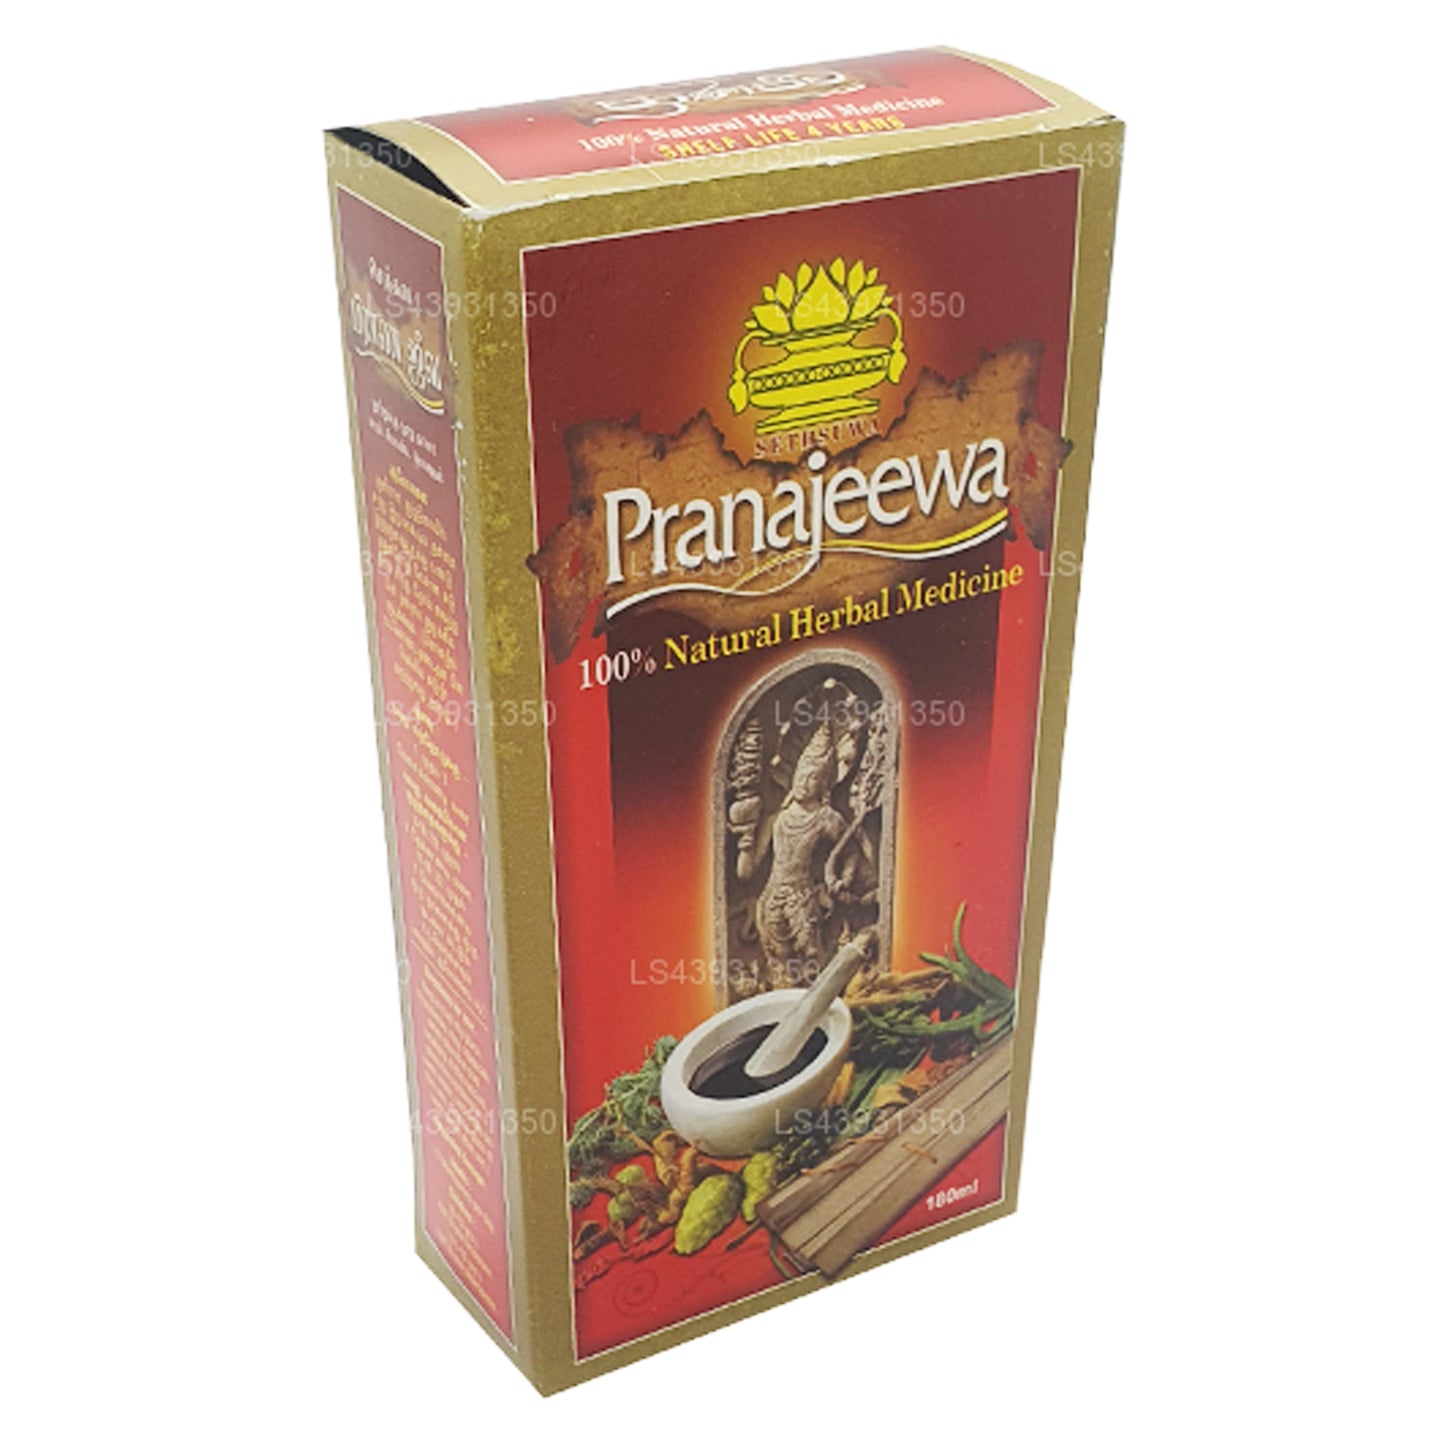 Чудо-масло Сетсувы Пранадживы